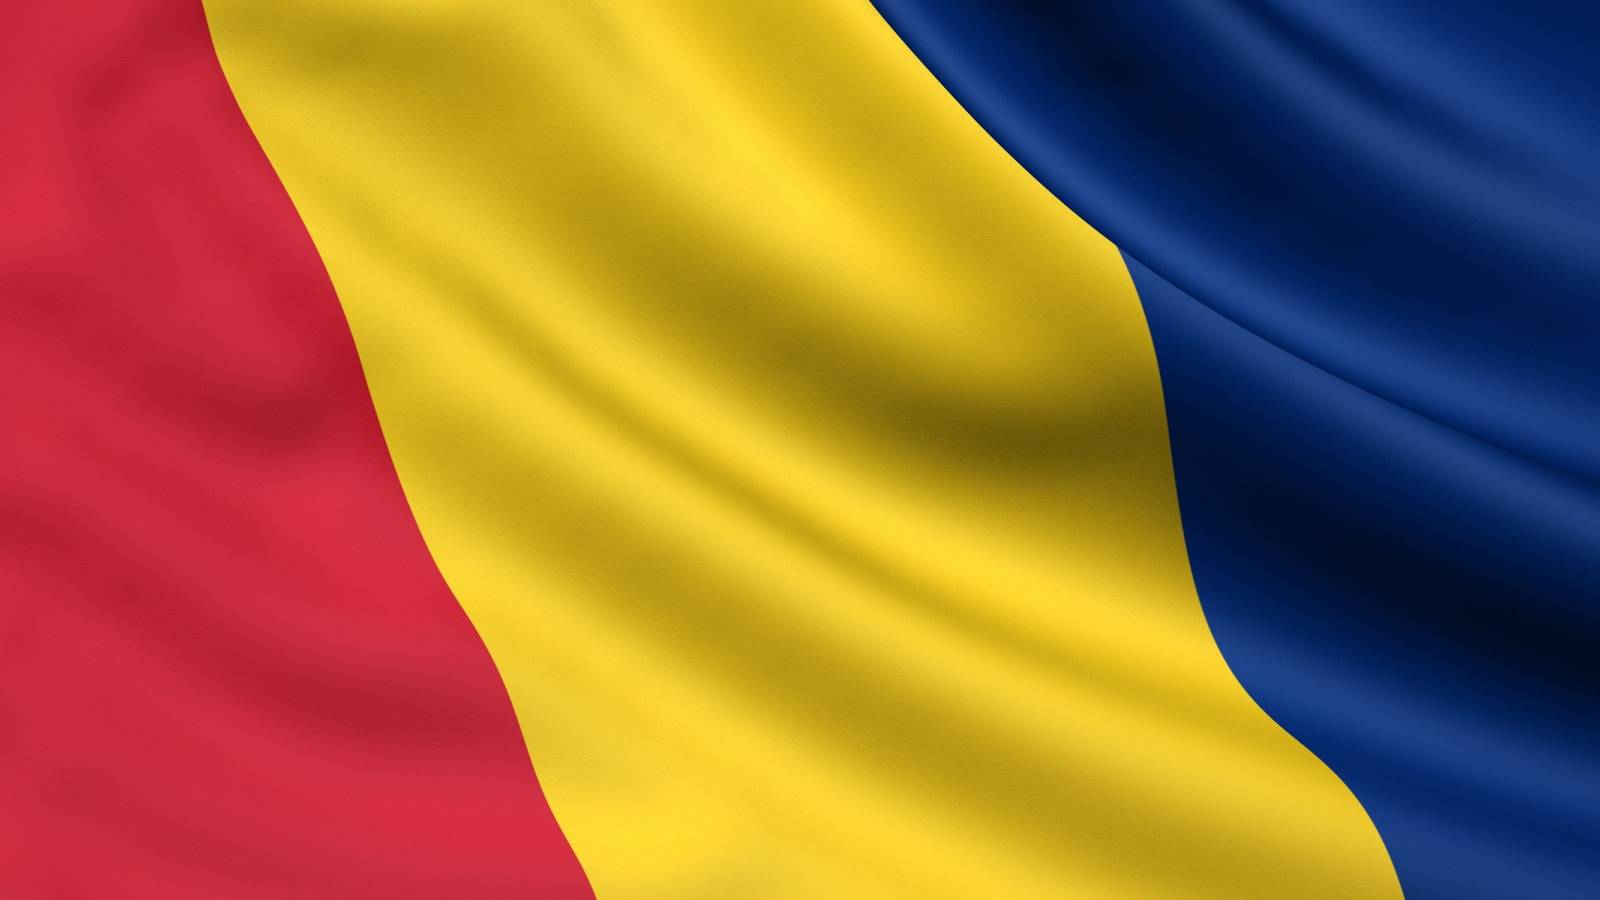 Aggiornato l'elenco del governo rumeno dei paesi ad alto rischio epidemiologico